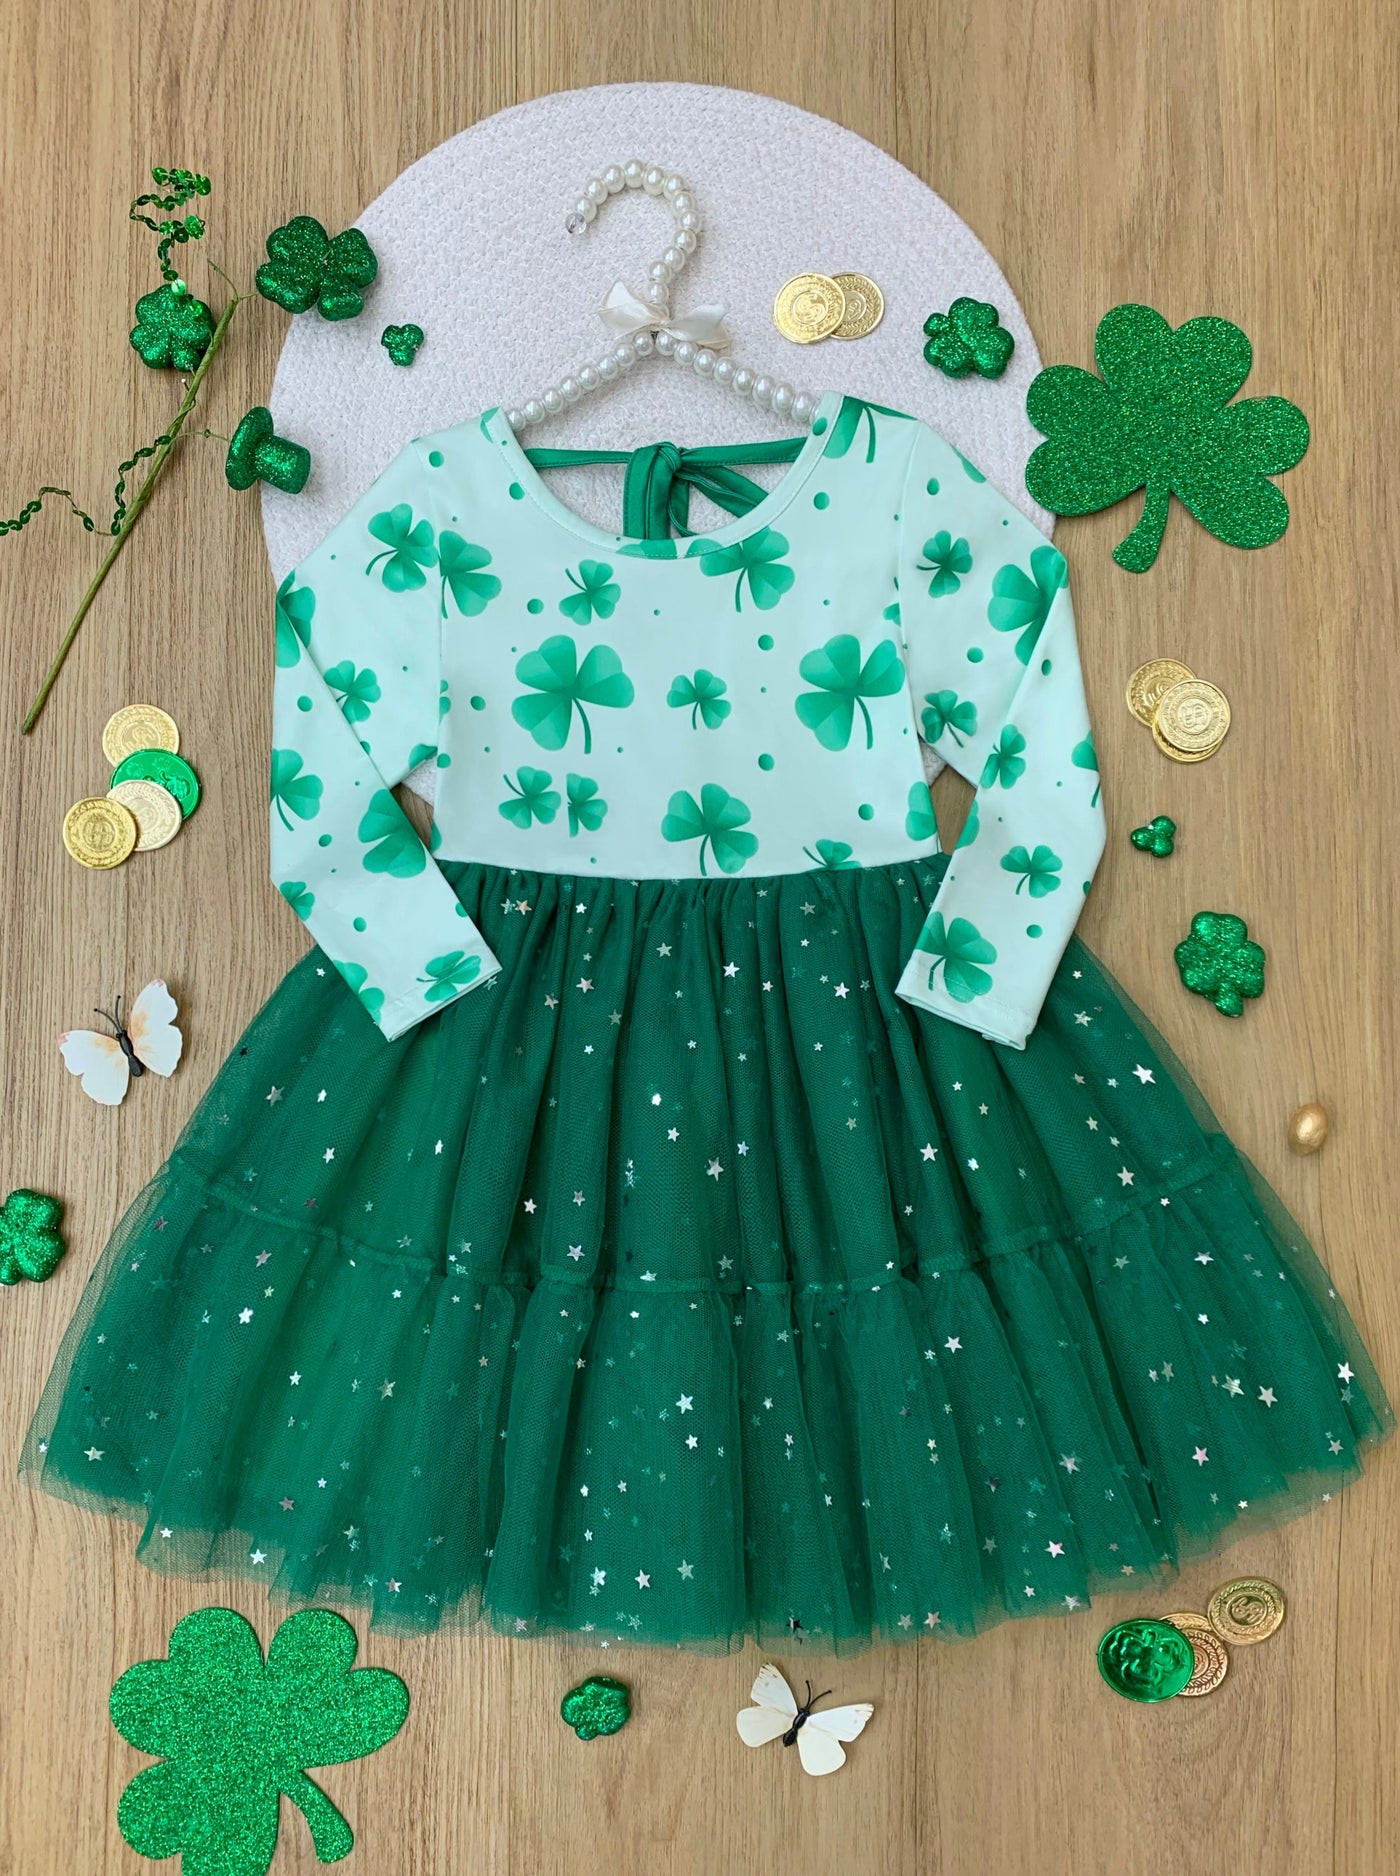 Mia Belle Girls Clover Tutu Dress | Girls St. Patrick's Day Dresses